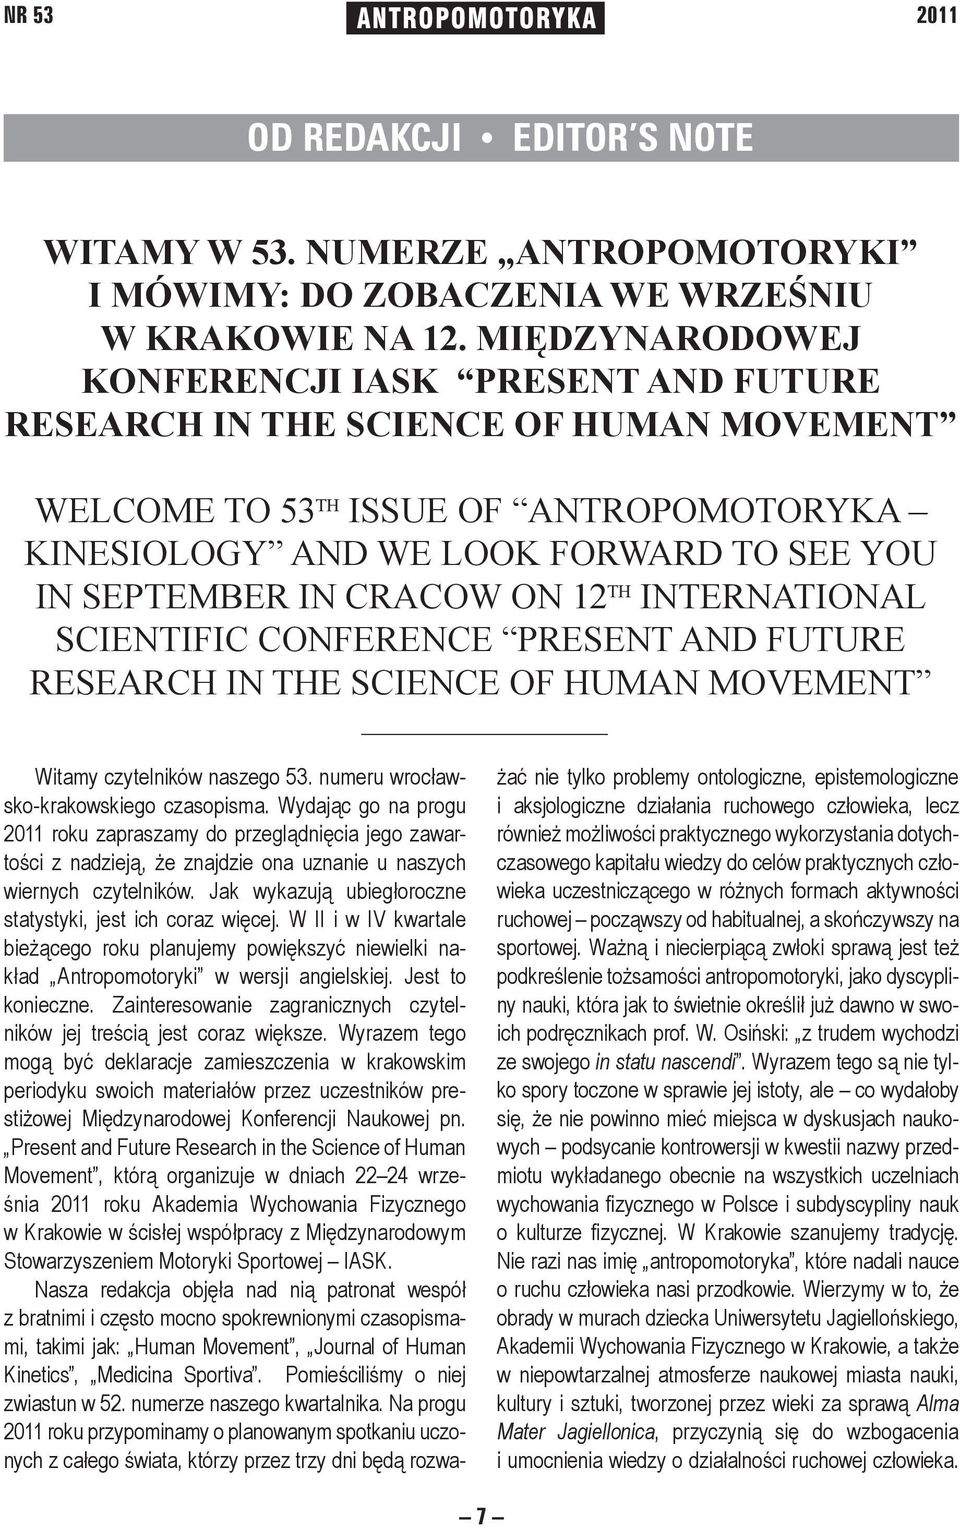 Cracow on 12 th International Scientific Conference Present and Future Research in the Science of Human Movement Witamy czytelników naszego 53. numeru wrocławsko-krakowskiego czasopisma.